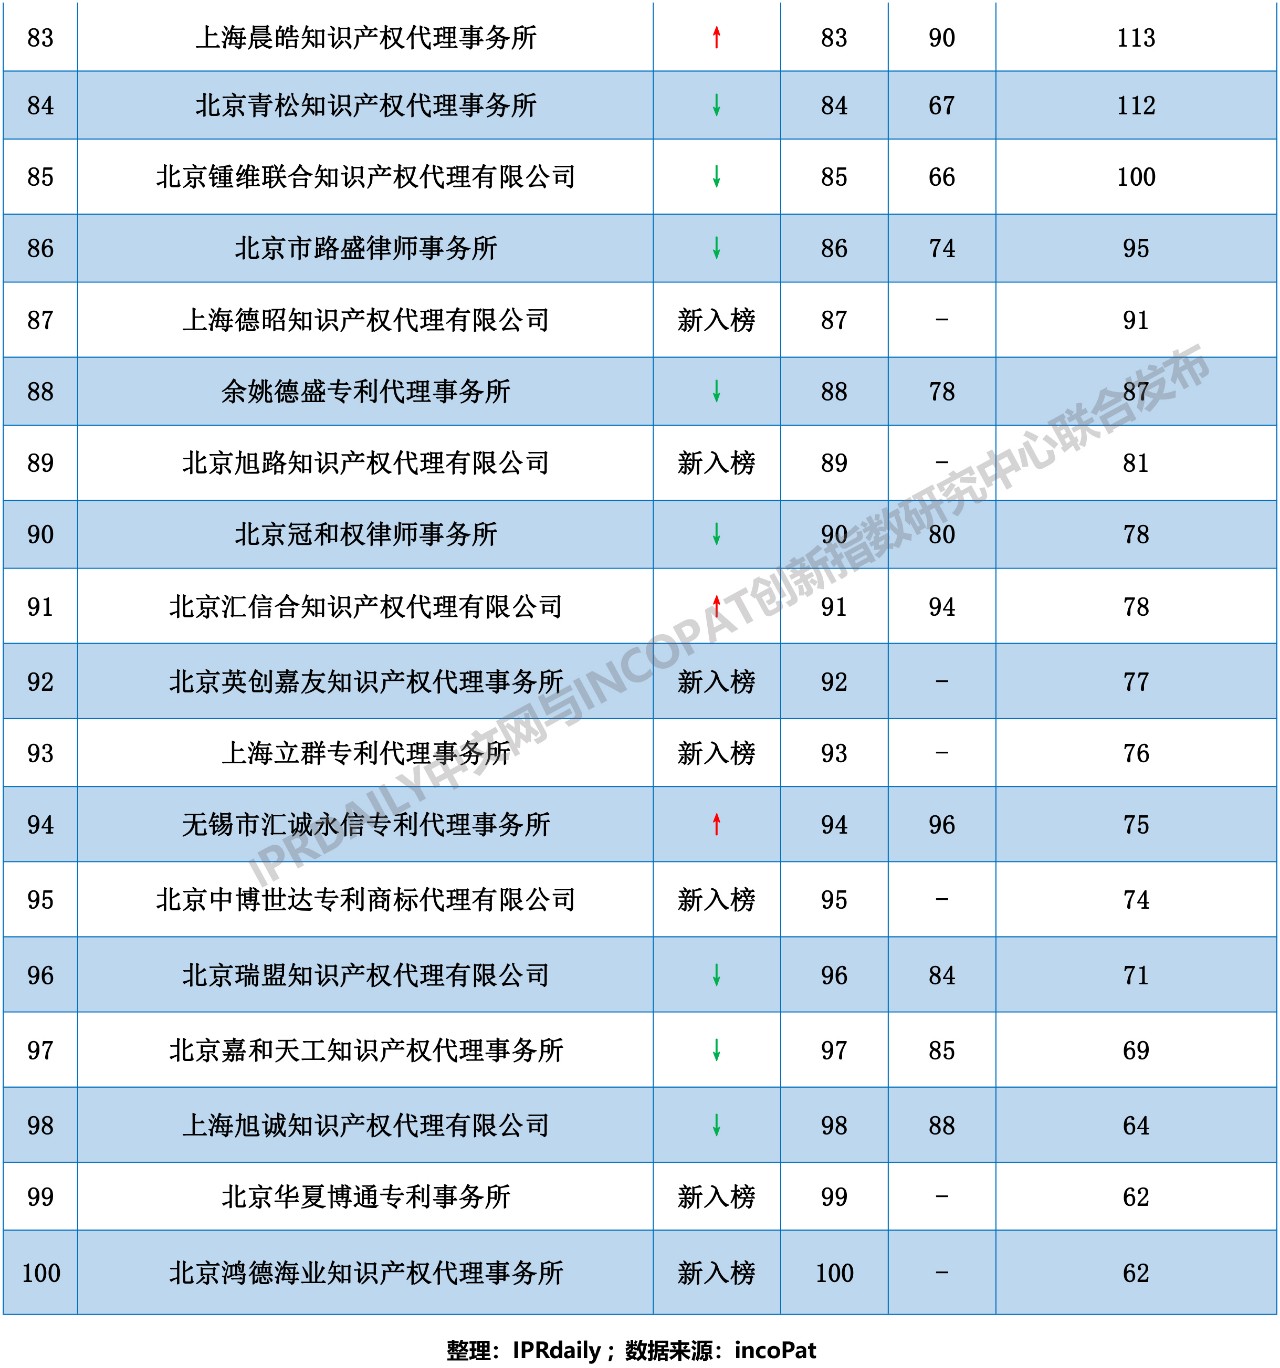 2018年全国代理机构「PCT中国国家阶段」涉外代理专利排行榜（TOP100）